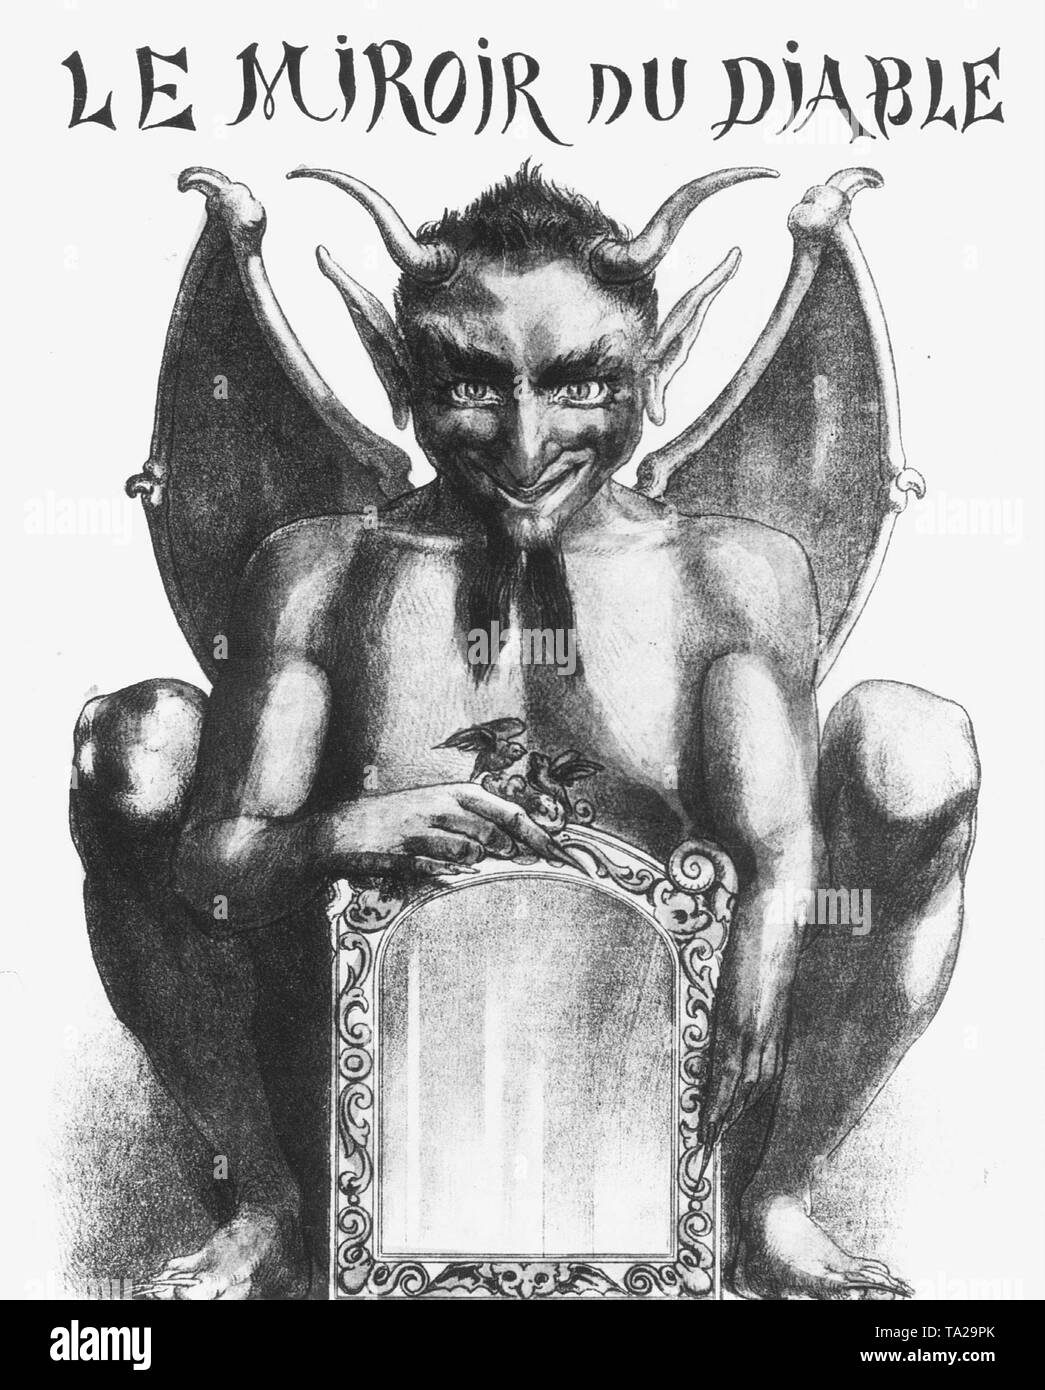 Ce diable illustration intitulée "Le miroir du diable" est le couvercle d'une boîte de jeu à partir de 1856. Banque D'Images